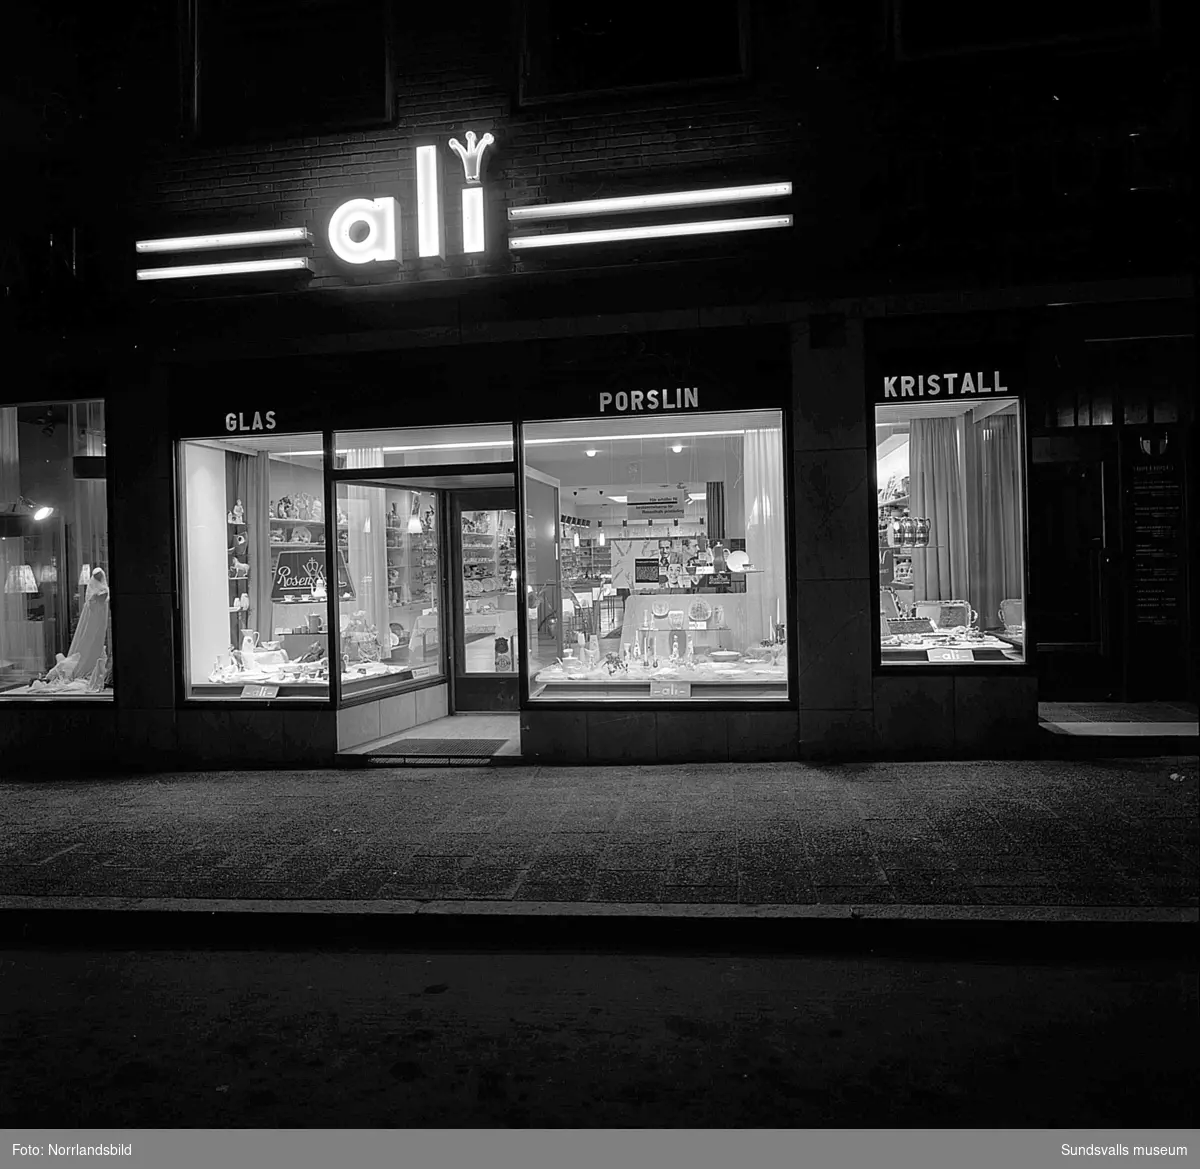 Ali glas & porslin i Thulehuset vid Kyrkogatan. Exteriör- och interiörbilder. I skyltfönstren visas Rosenthalporslin.